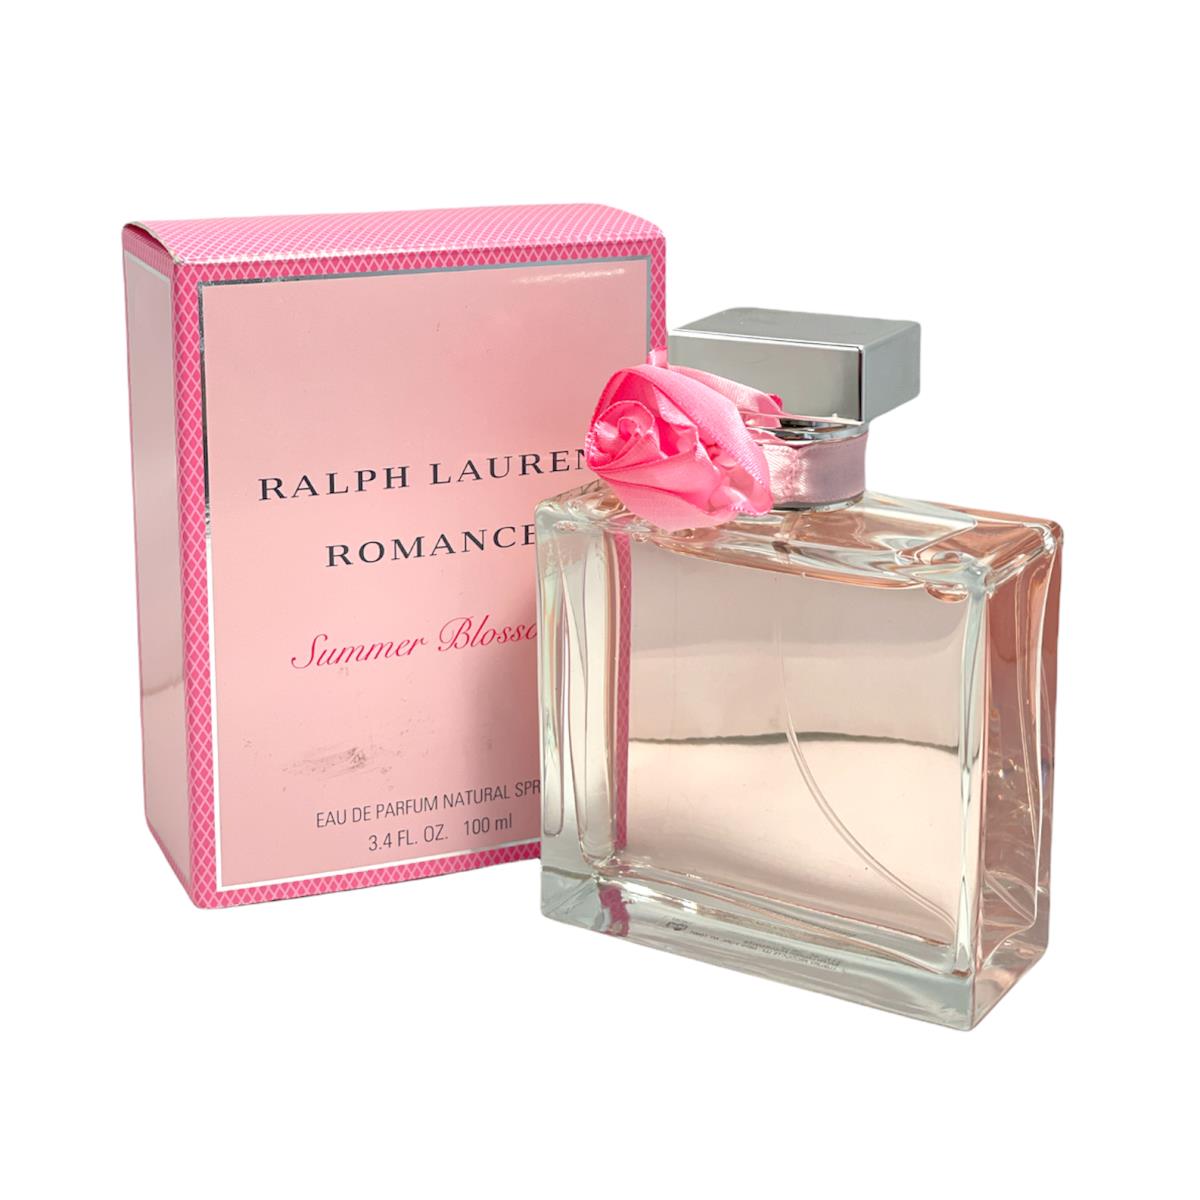 Ralph Lauren Romance Summer Blossom Eau De Parfum Spray 3.4fl.oz./100ml